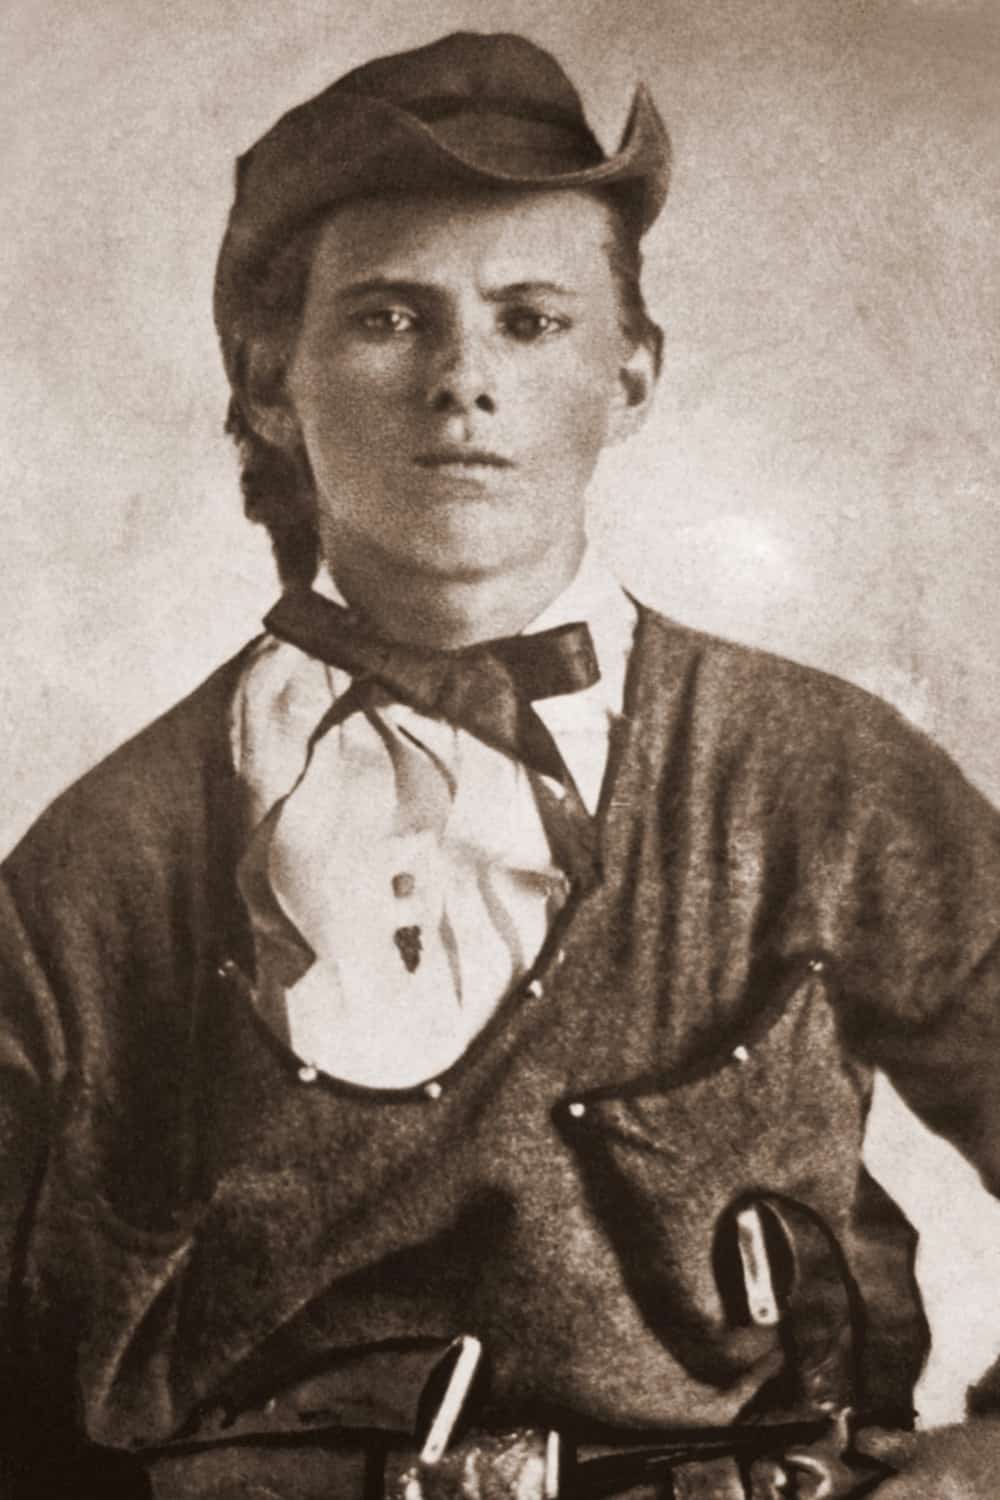 Jesse James – 1847 to 1882